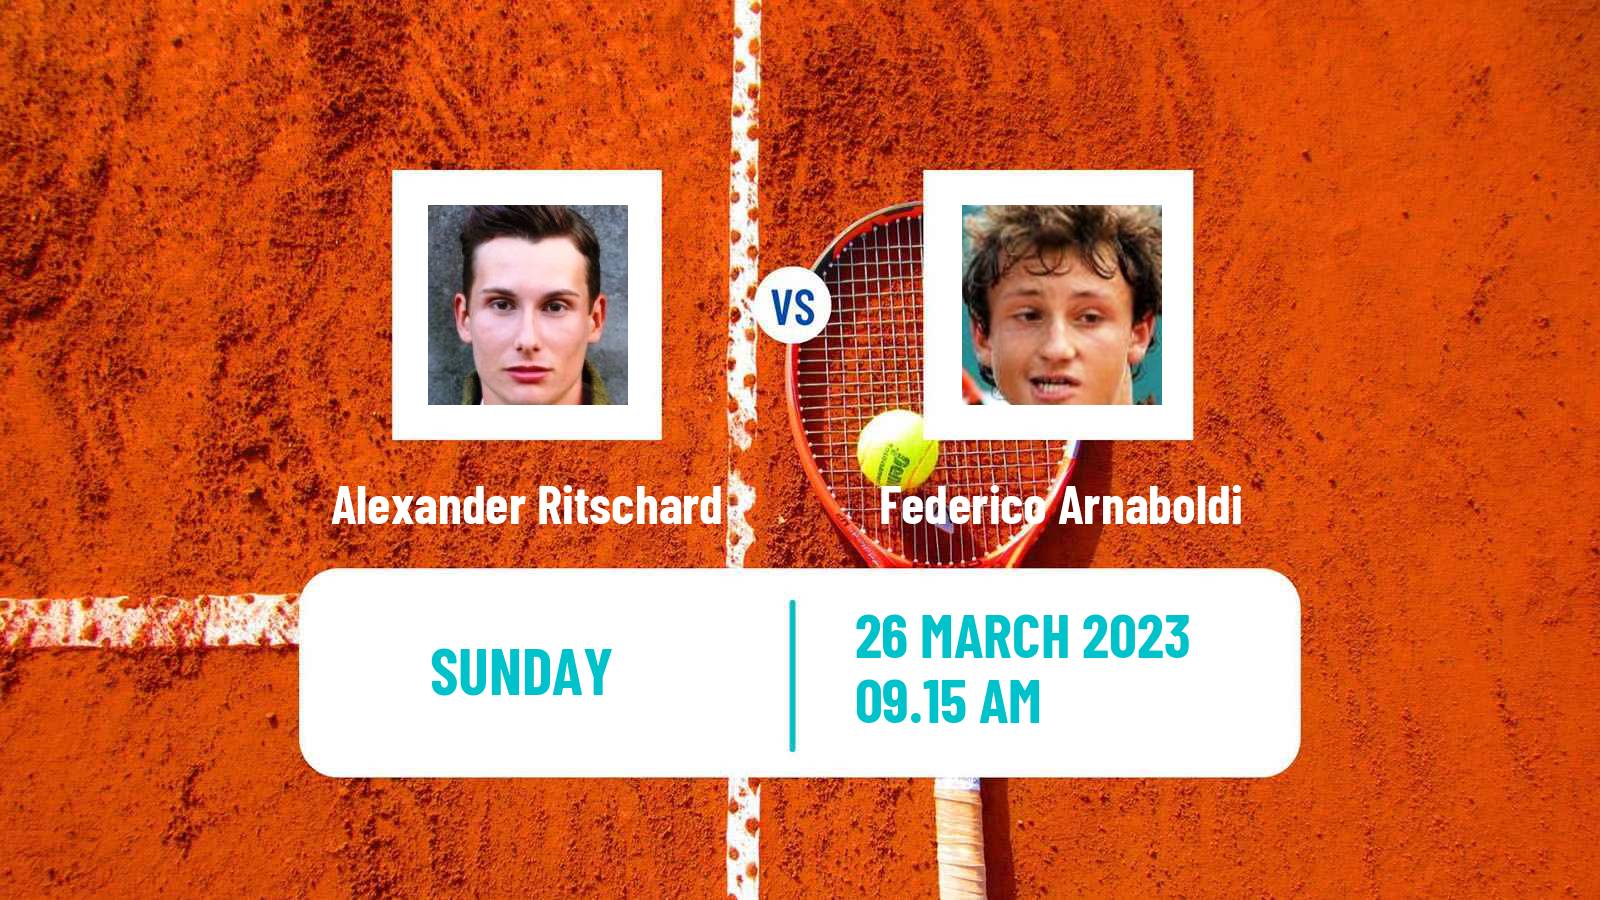 Tennis ATP Challenger Alexander Ritschard - Federico Arnaboldi